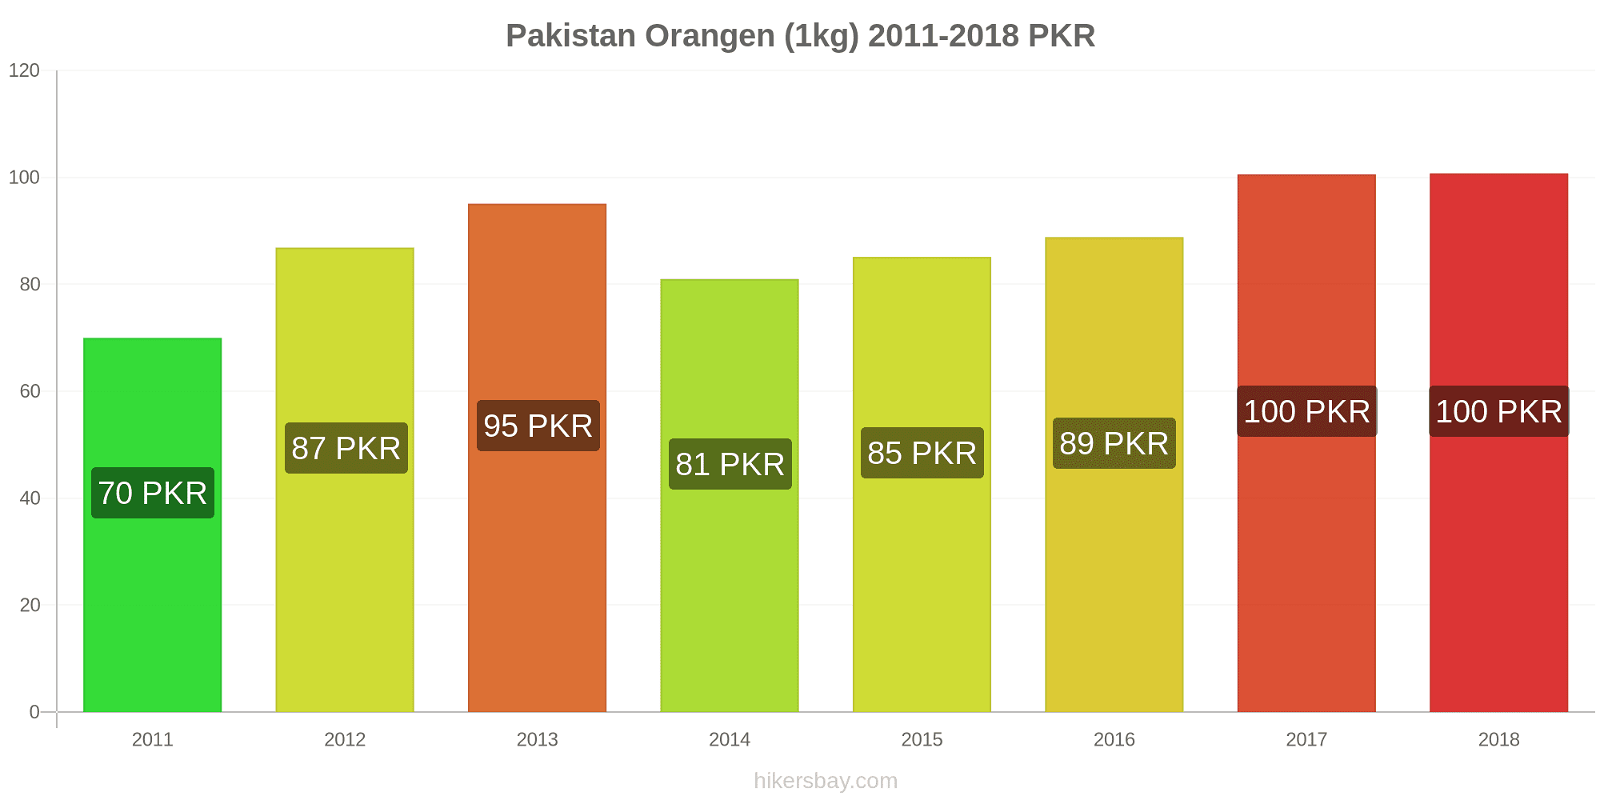 Pakistan Preisänderungen Orangen (1kg) hikersbay.com